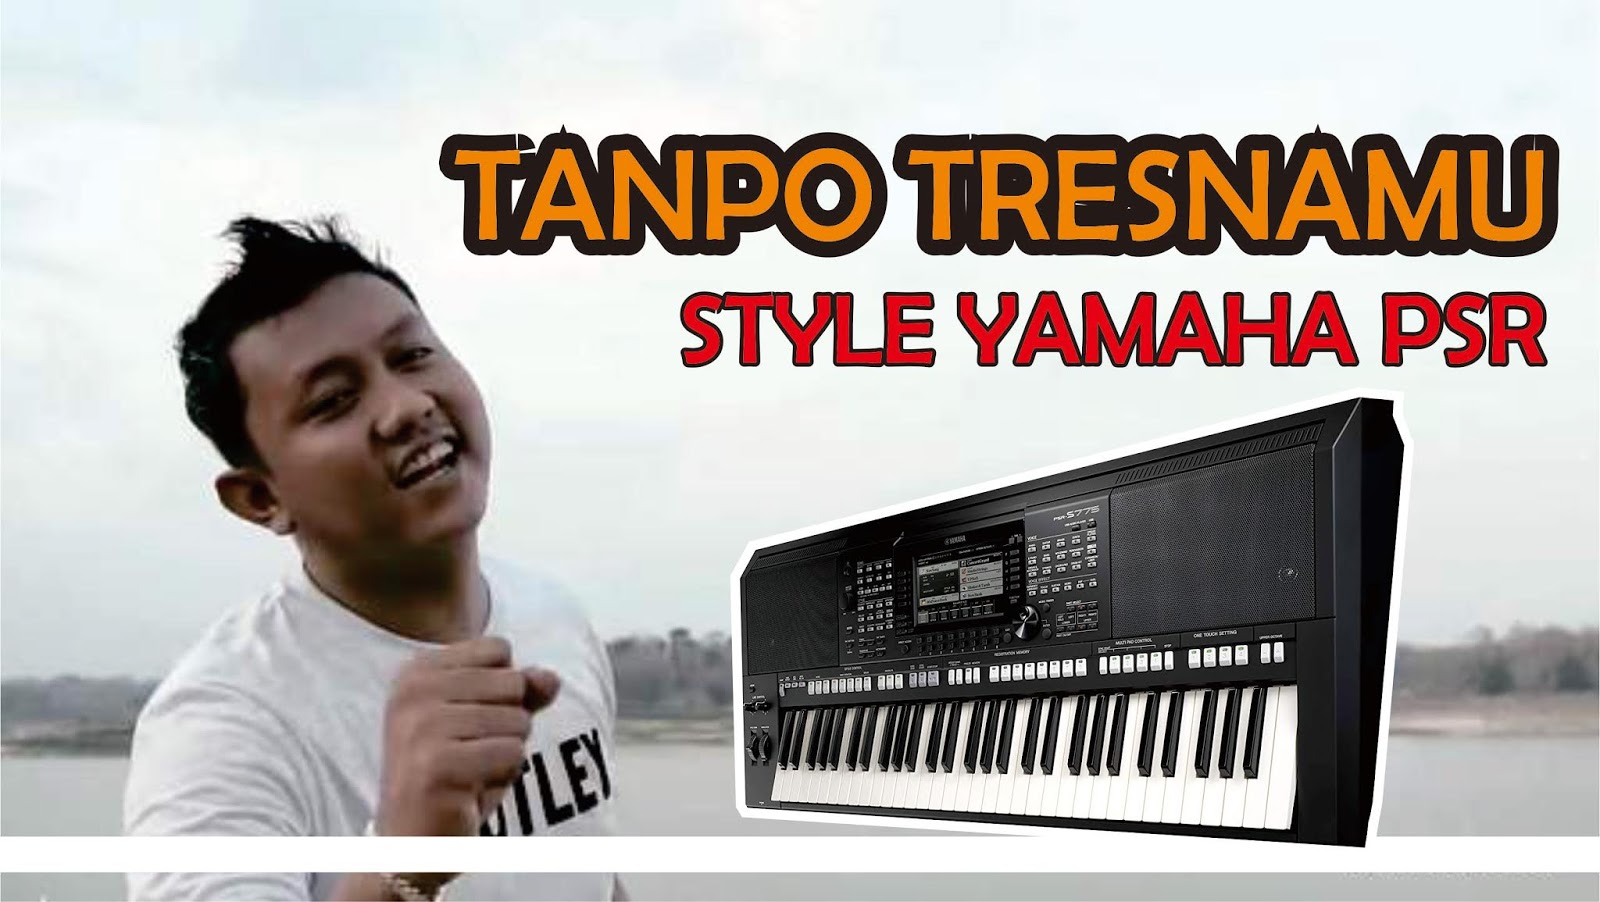 gratis style dangdut yamaha psr 750 ritmo